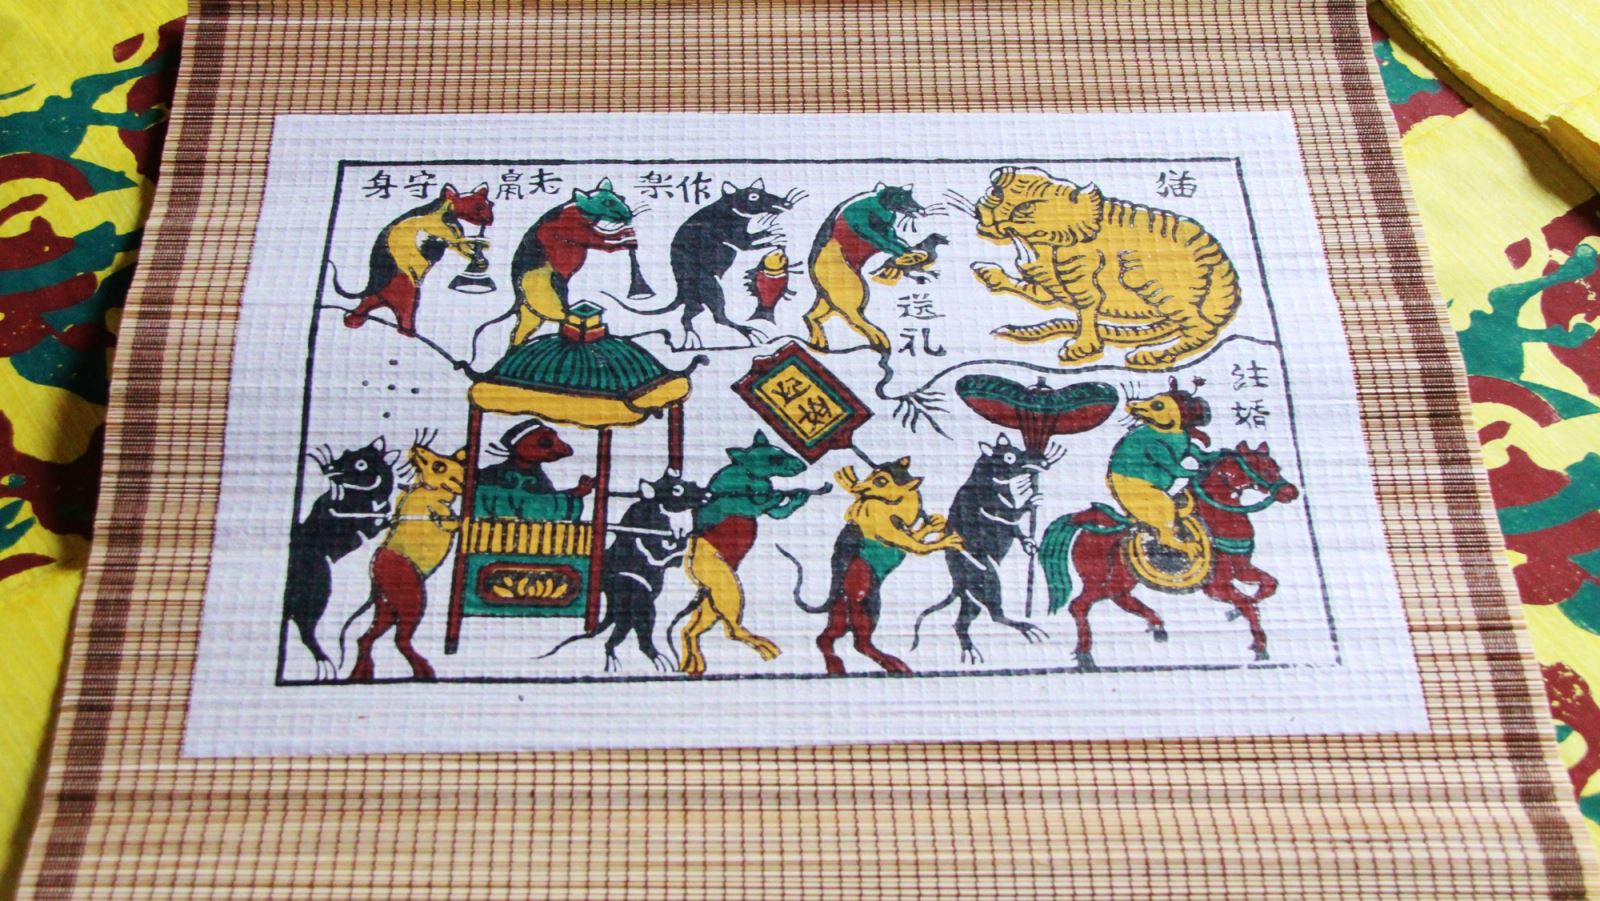 Chuột là một trong những biểu tượng đặc trưng của văn hóa Việt Nam, được thể hiện qua các ca dao và tục ngữ. Xem hình ảnh về chuột trong các câu đố và truyện cười sẽ giúp bạn khám phá thêm về văn hóa dân gian Việt Nam.